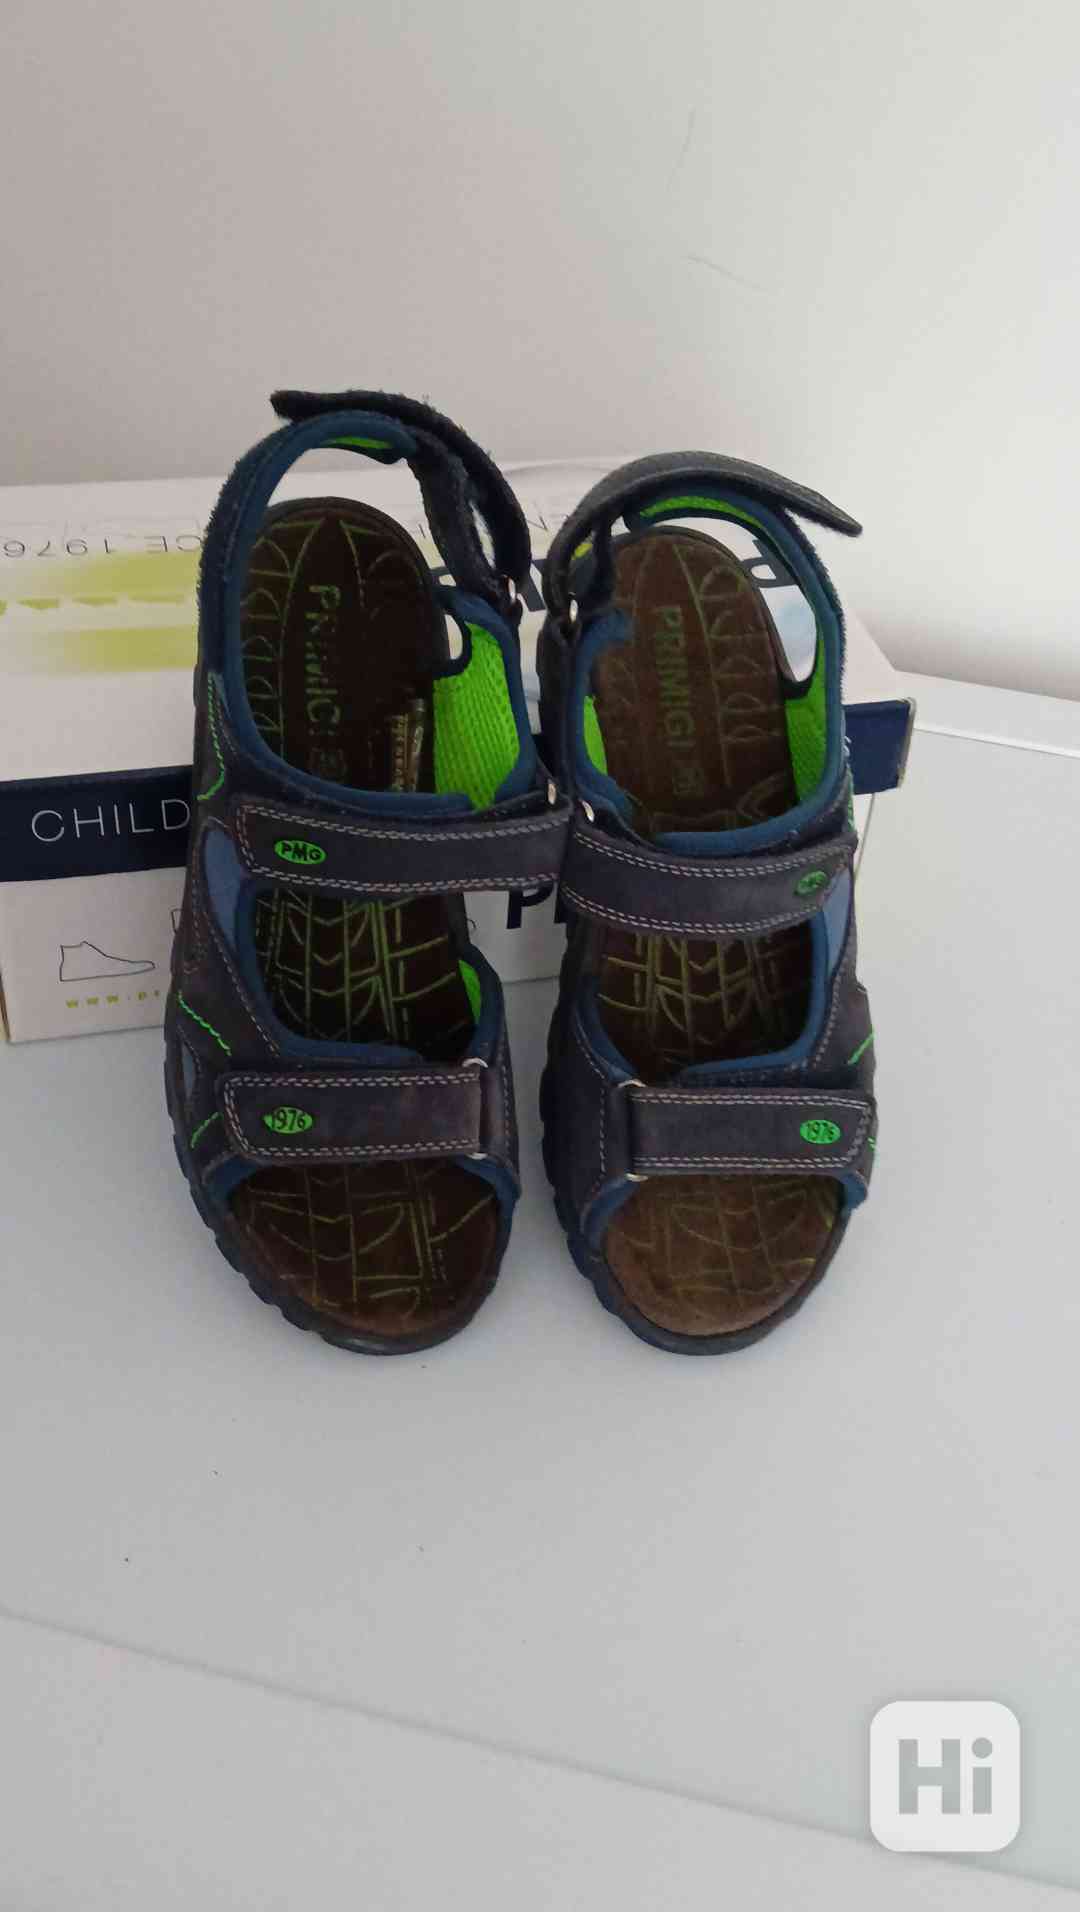 Chlapecké sandály vel. 37, PRIMIGI, modré, zelené detaily - foto 1